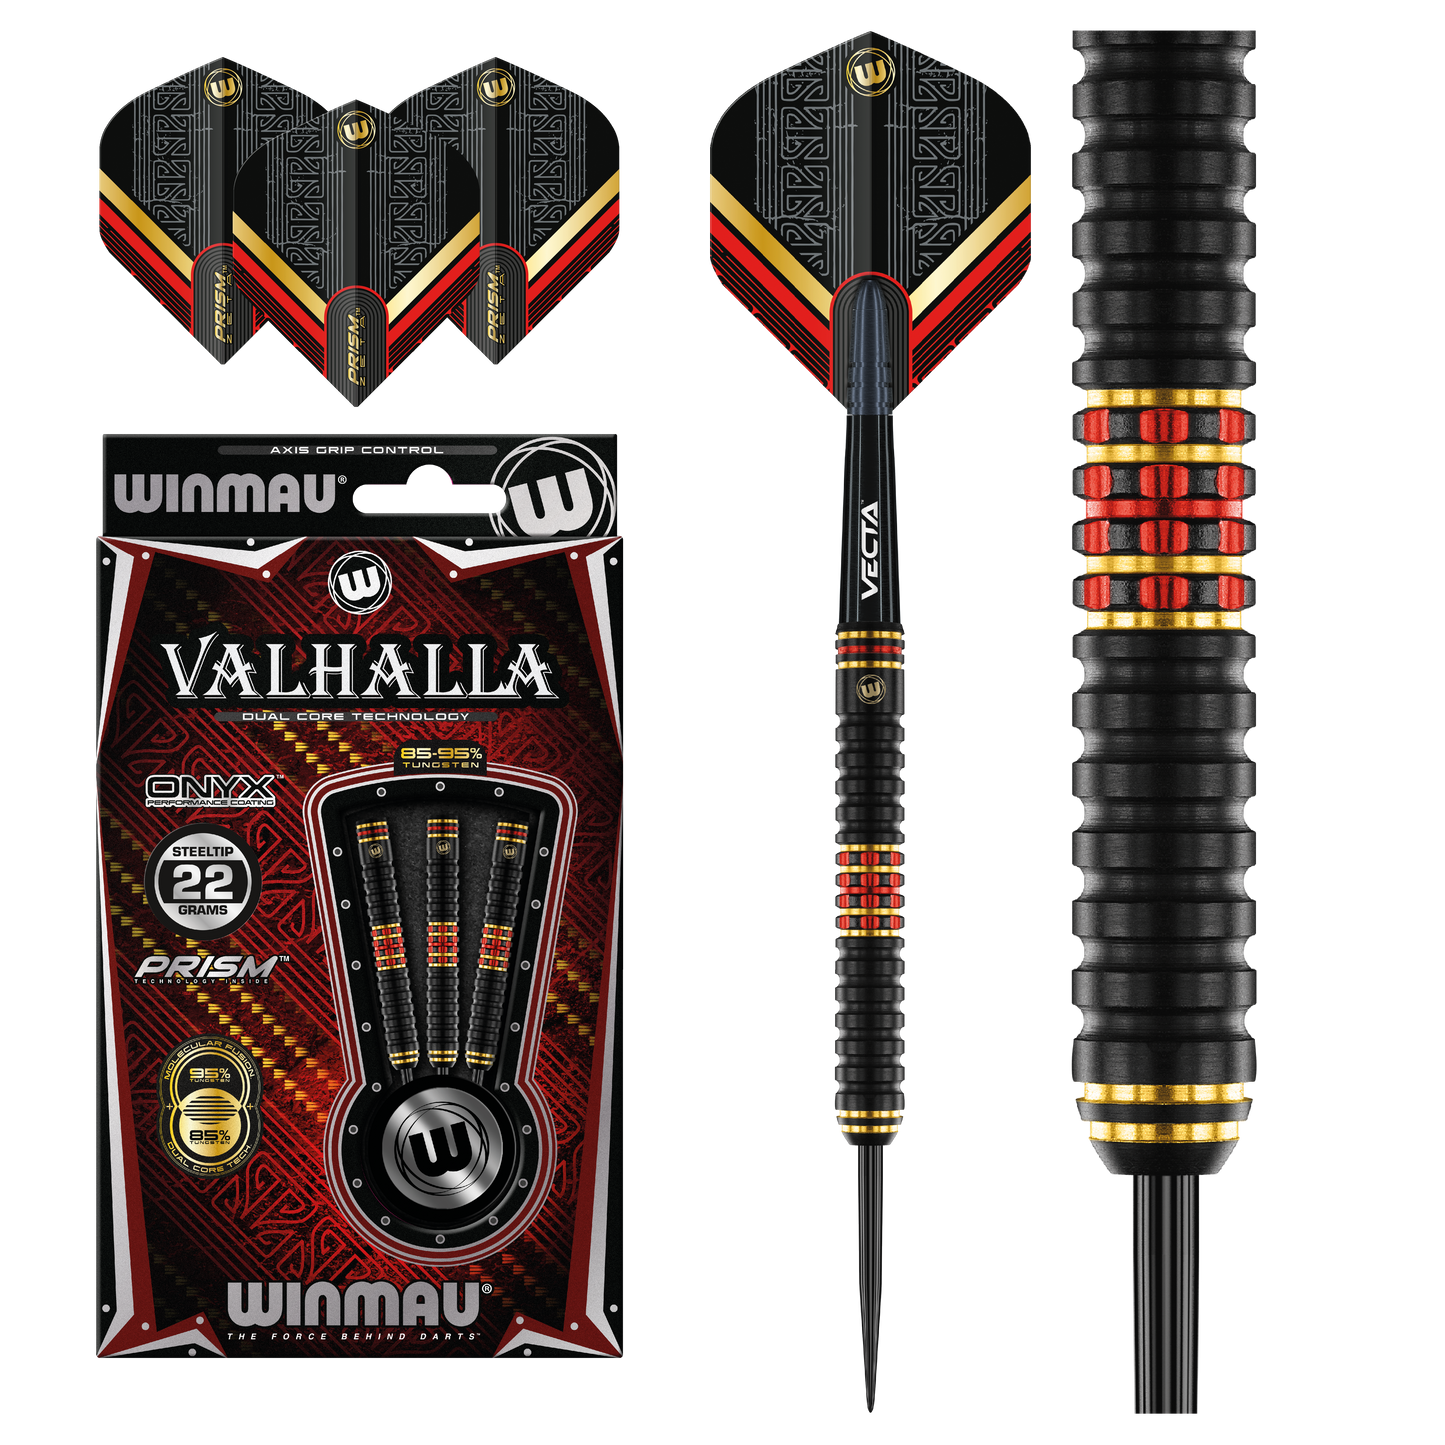 Winmau Valhalla Steel Tip Darts 95%/85% Tungsten Dual Core technology